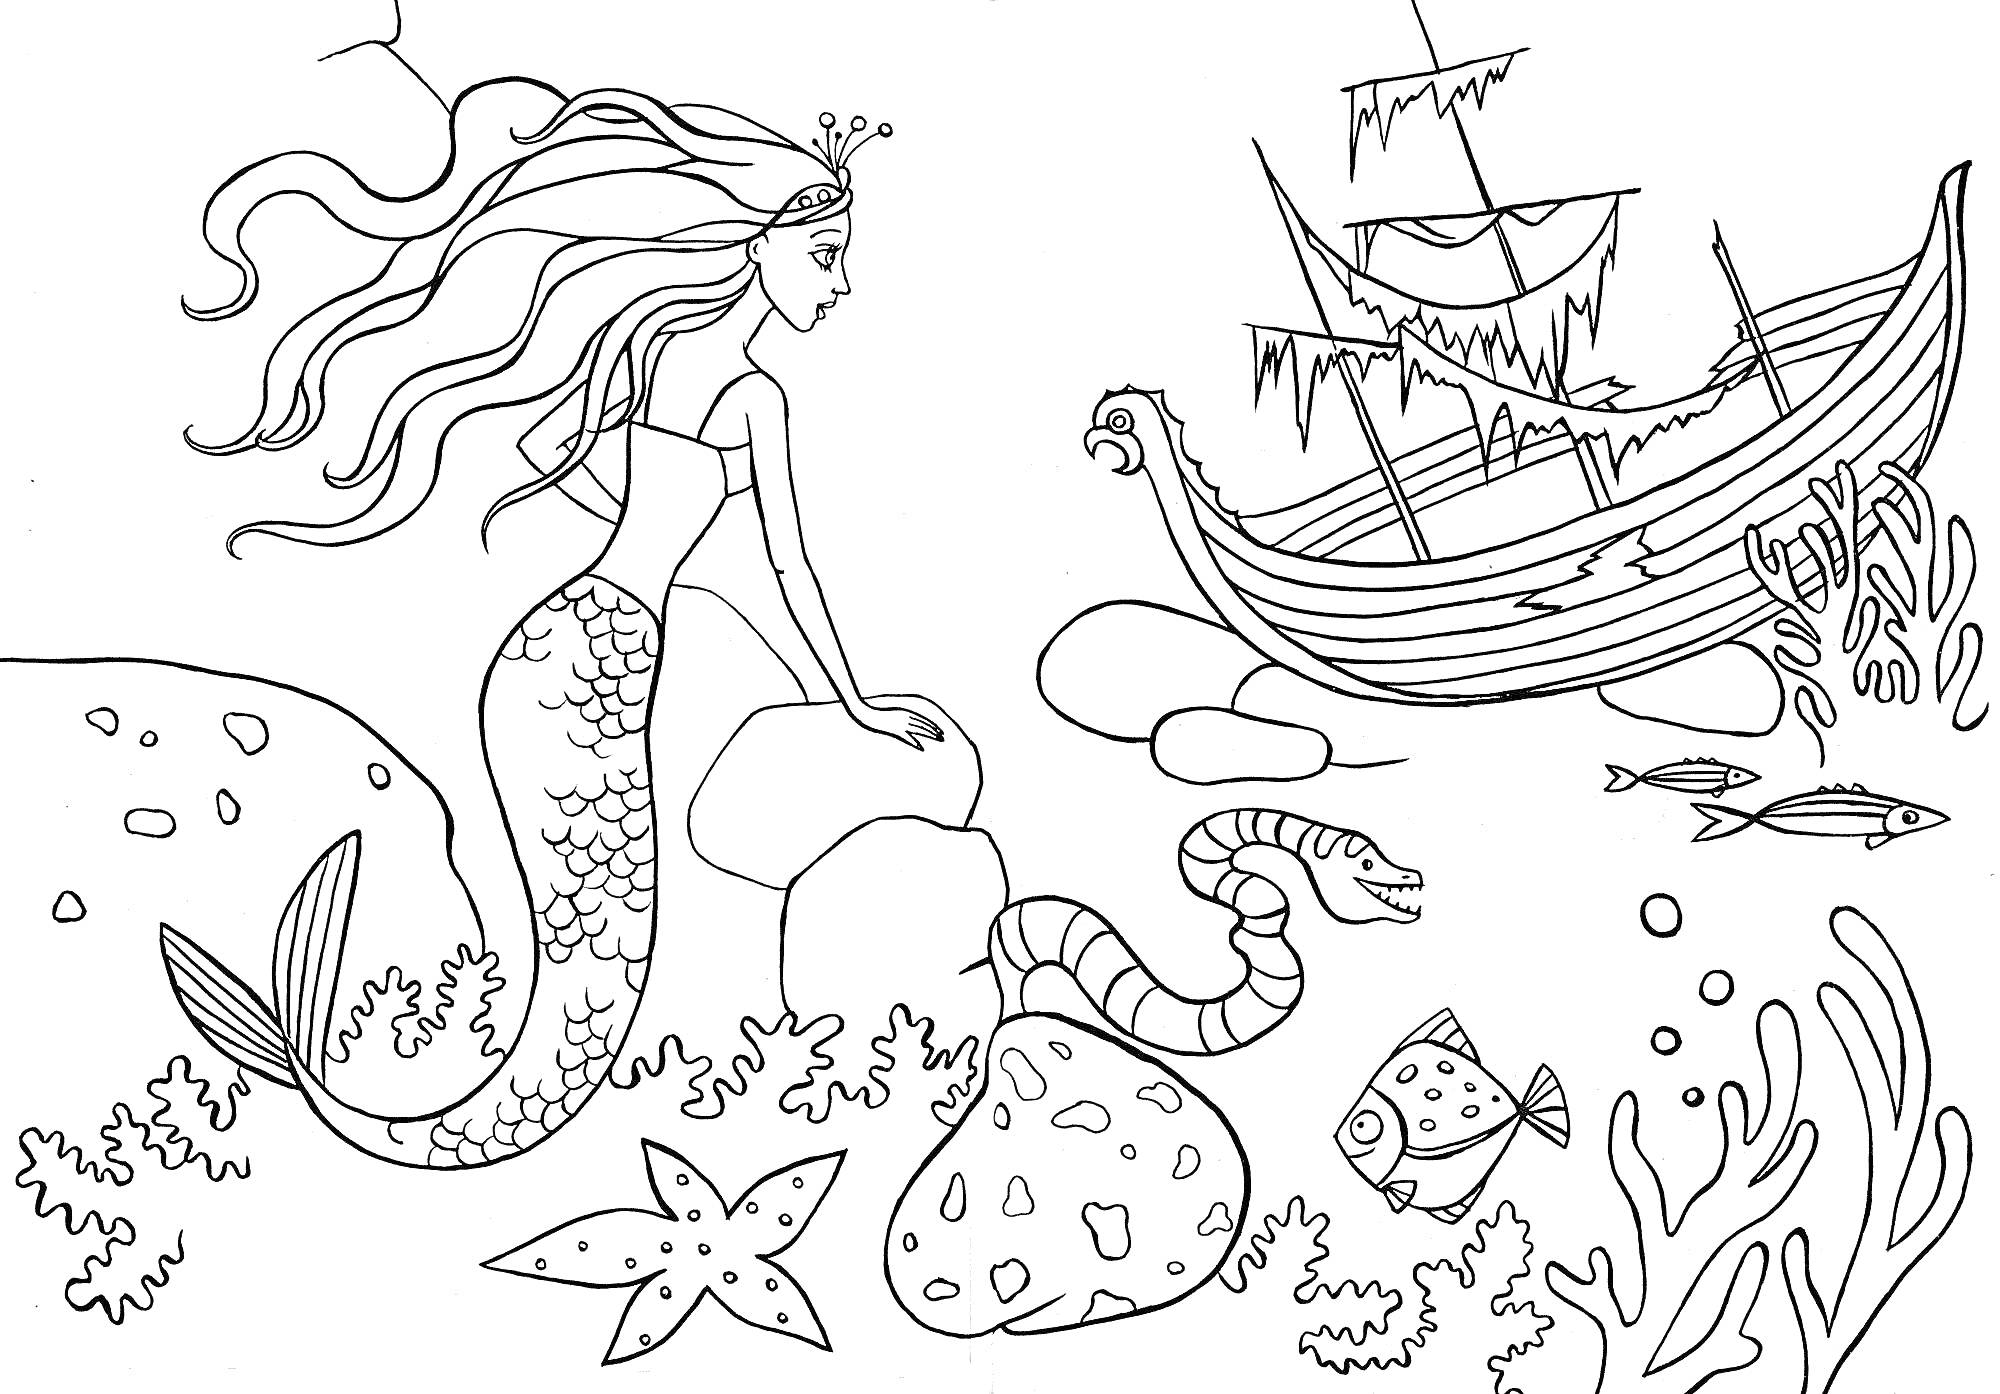 Раскраска Русалка с затонувшим кораблем, морскими животными и растительностью.